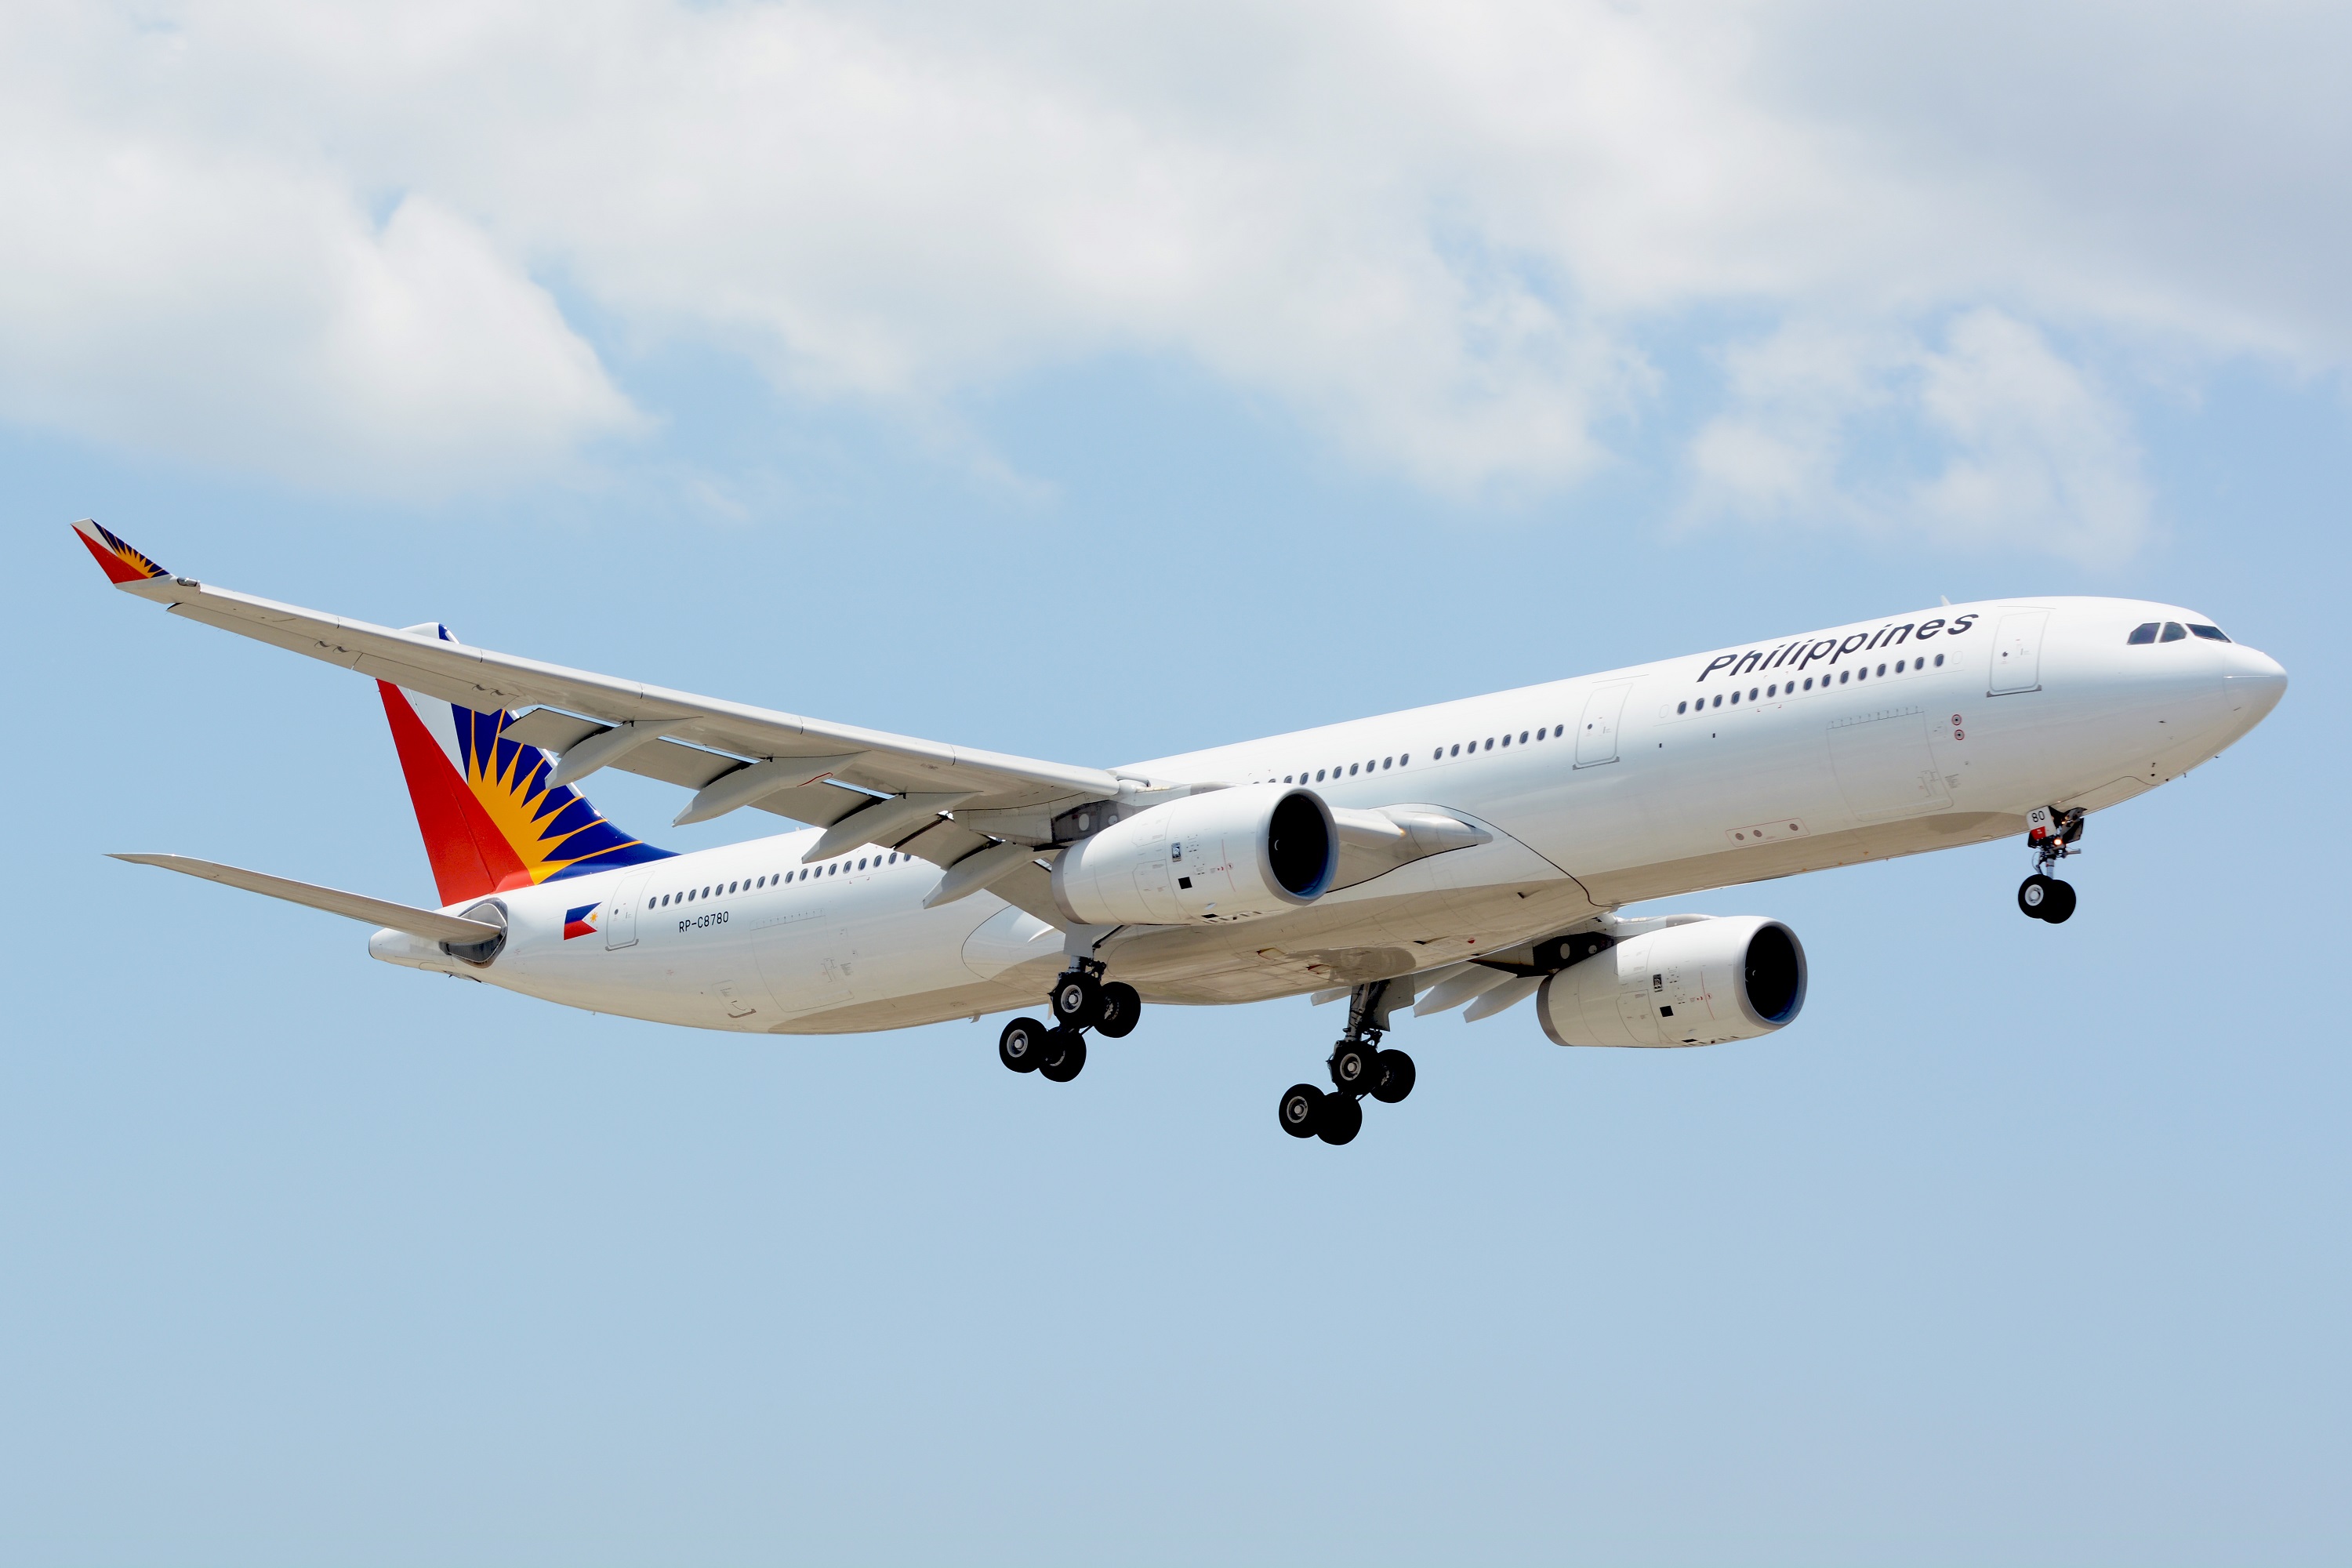 Philippine airlines flight schedule riyadh to manila august 2021